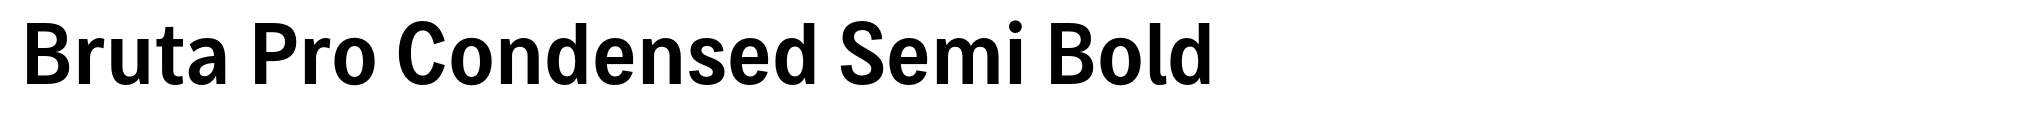 Bruta Pro Condensed Semi Bold image